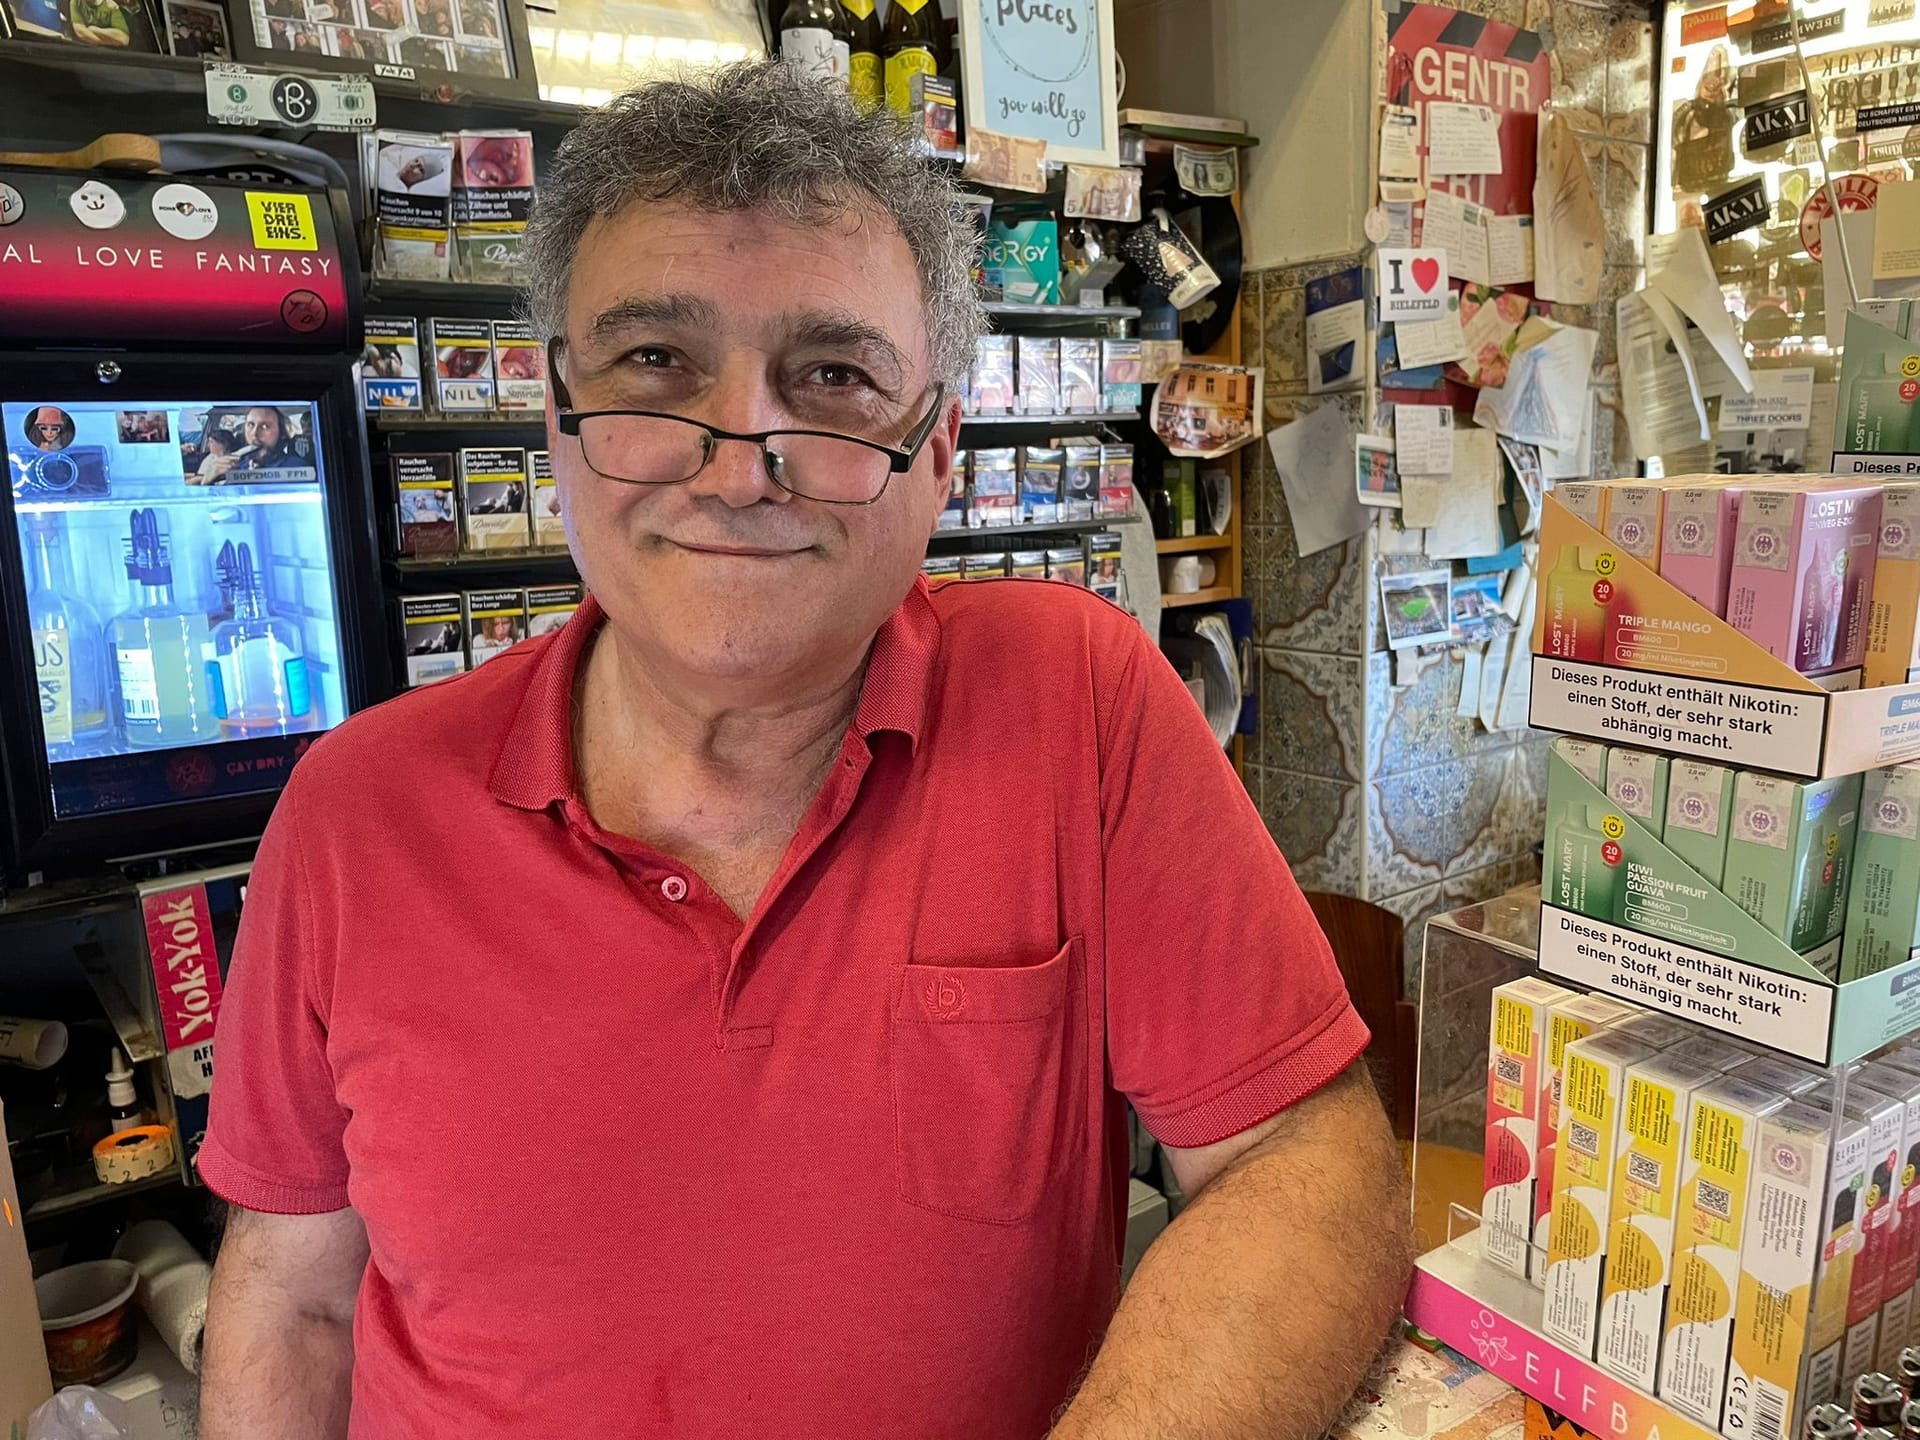 Kioskbesitzer Nazim A.: Ob eine Verbotszone für weniger Gewalt sorge, hält er für fragwürdig.